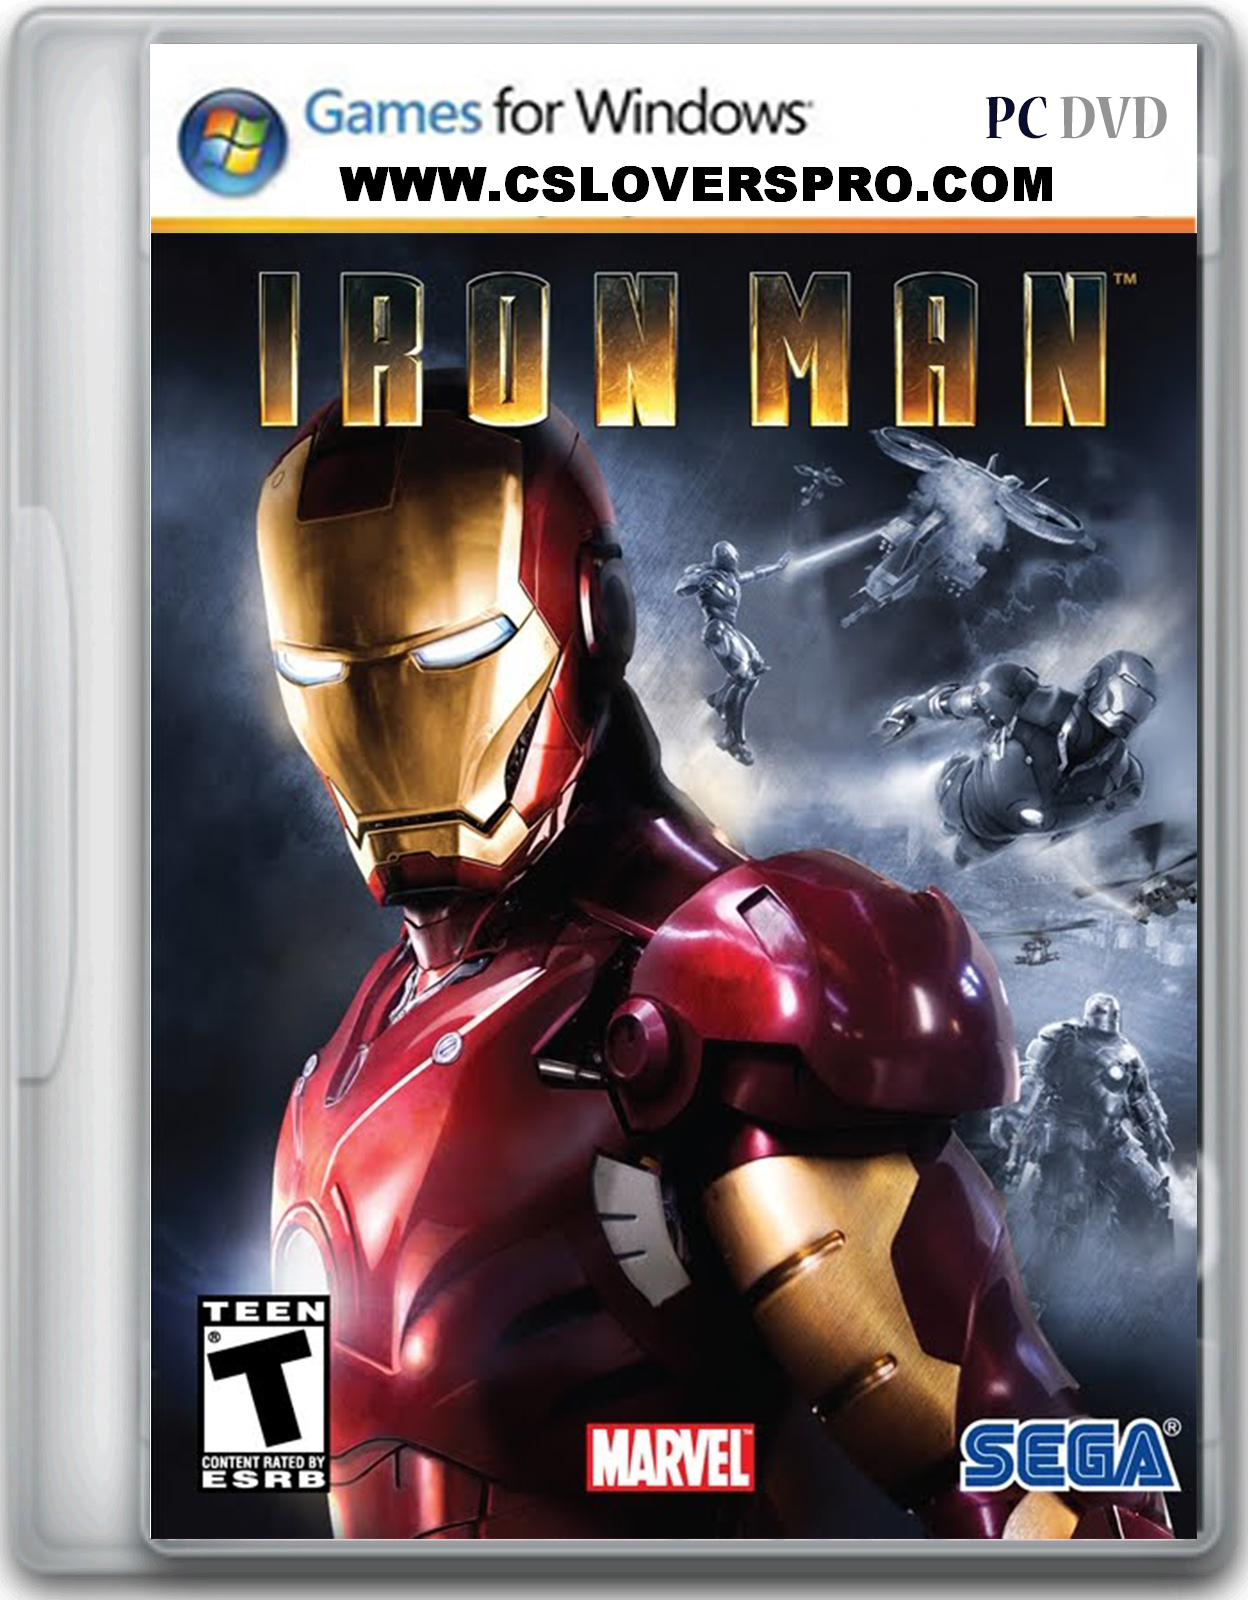 Iron Man 2008 Full PC DVD Game Version Free Download ...